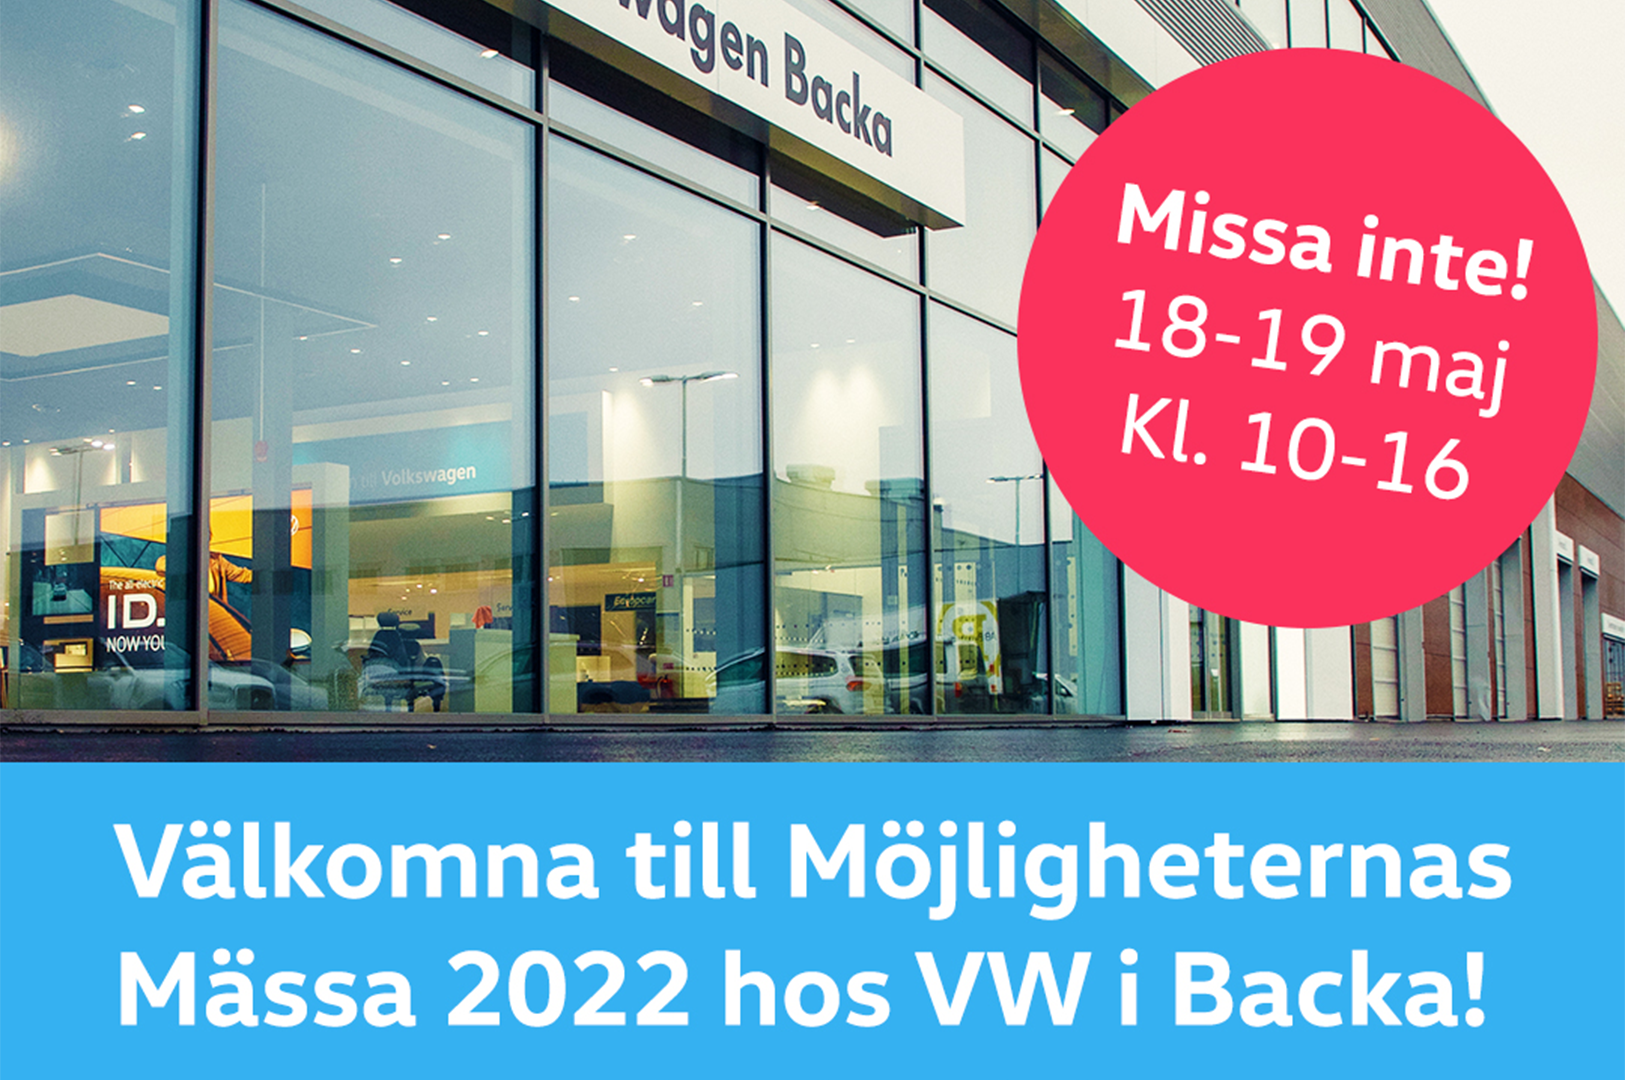 Varmt välkommen till Möjligheternas Mässa på DinBil Backa 18-19/5 och prata utrustning till din transportbil